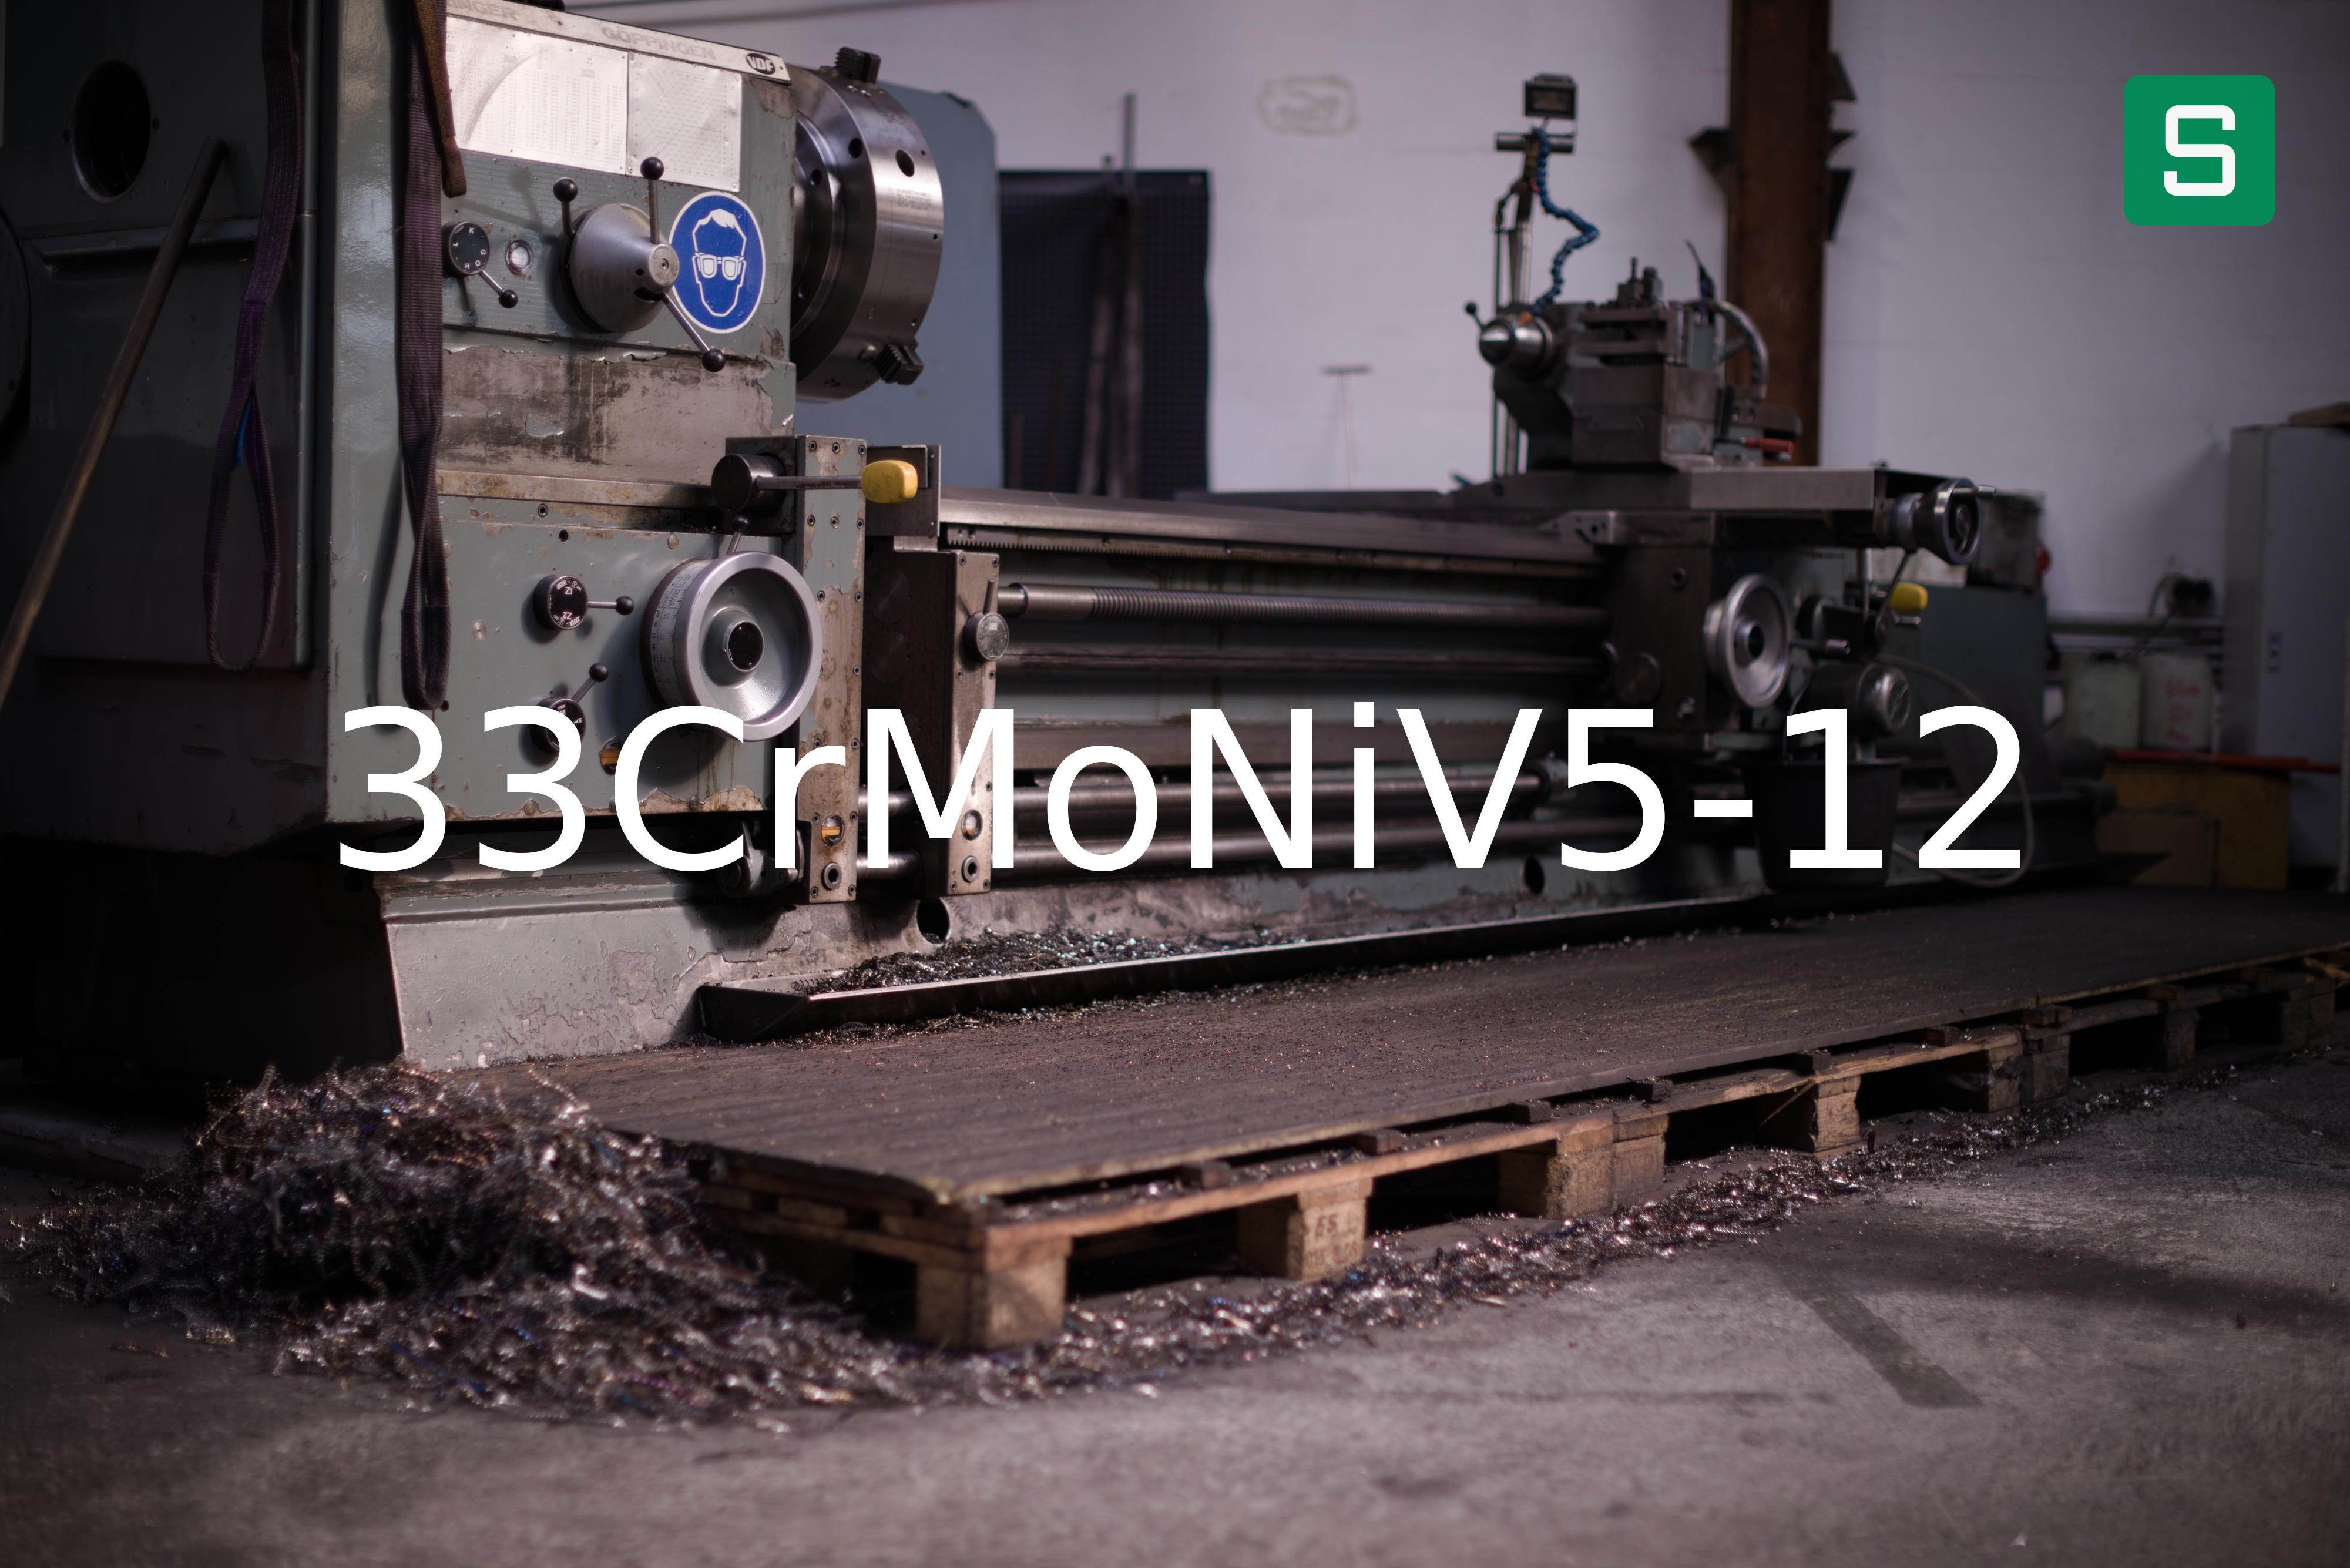 Steel Material: 33CrMoNiV5-12